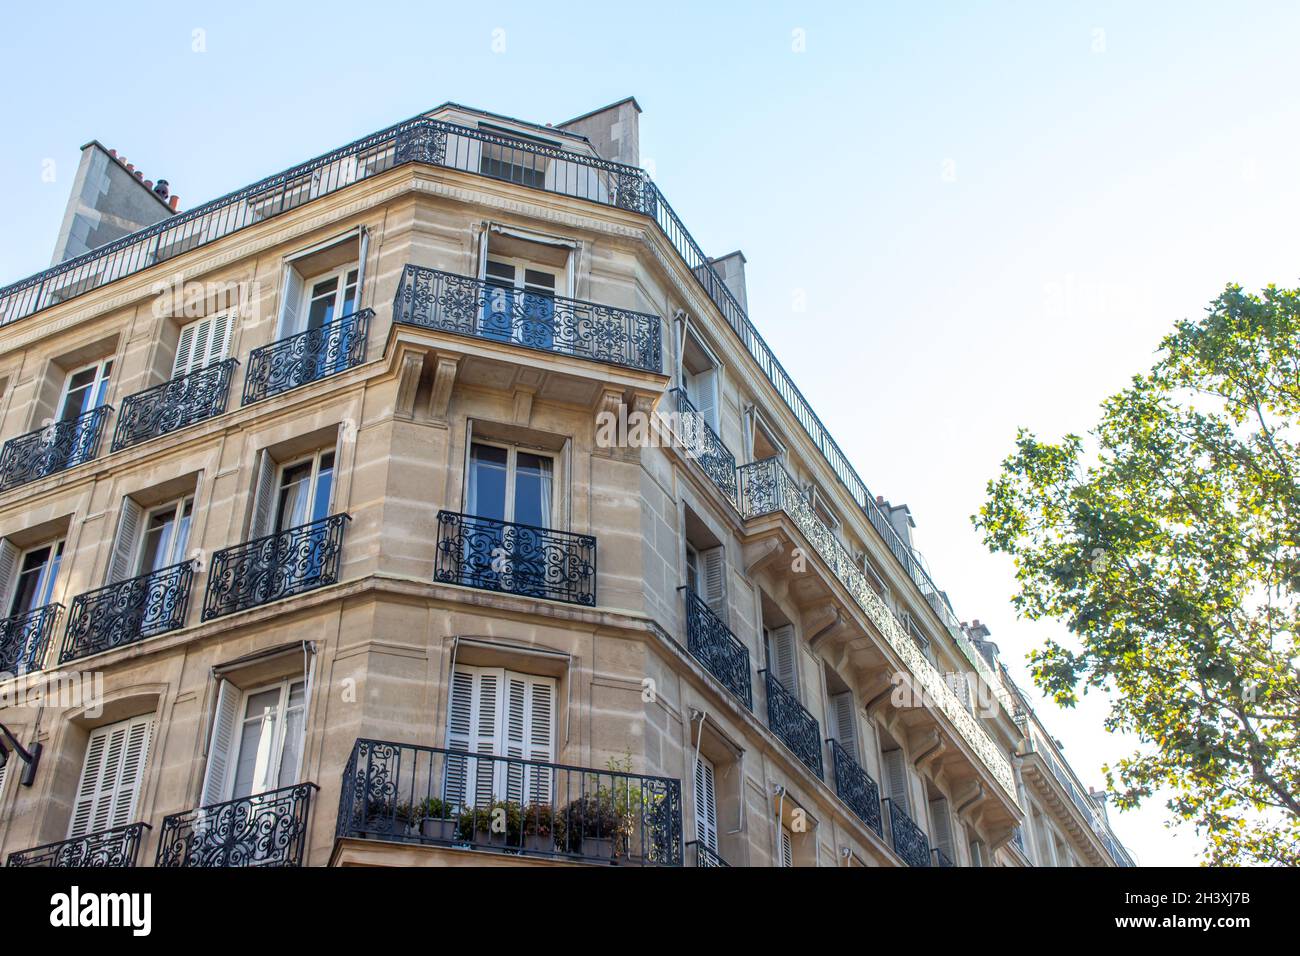 Vue rapprochée sur la texture extérieure de l'architecture française traditionnelle, avec des murs en pierre et de beaux balcons ornés Banque D'Images